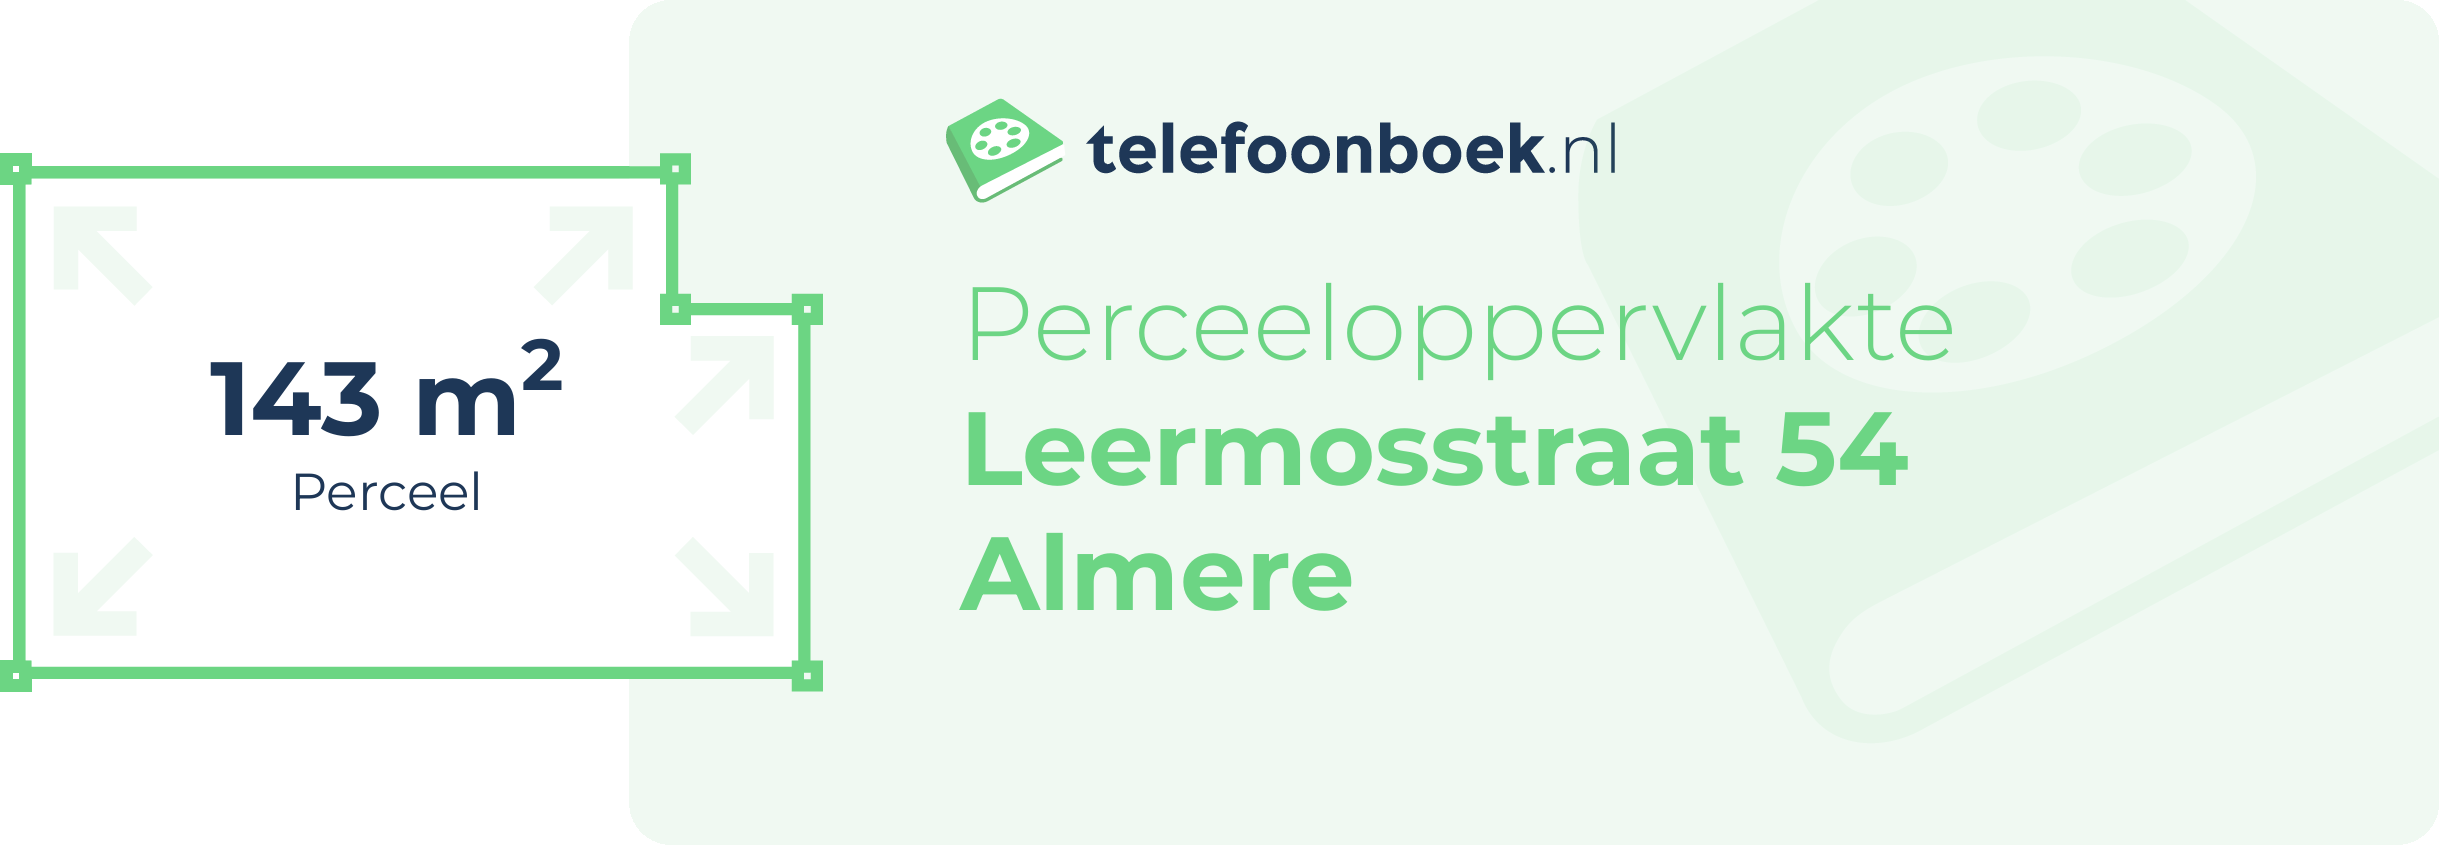 Perceeloppervlakte Leermosstraat 54 Almere